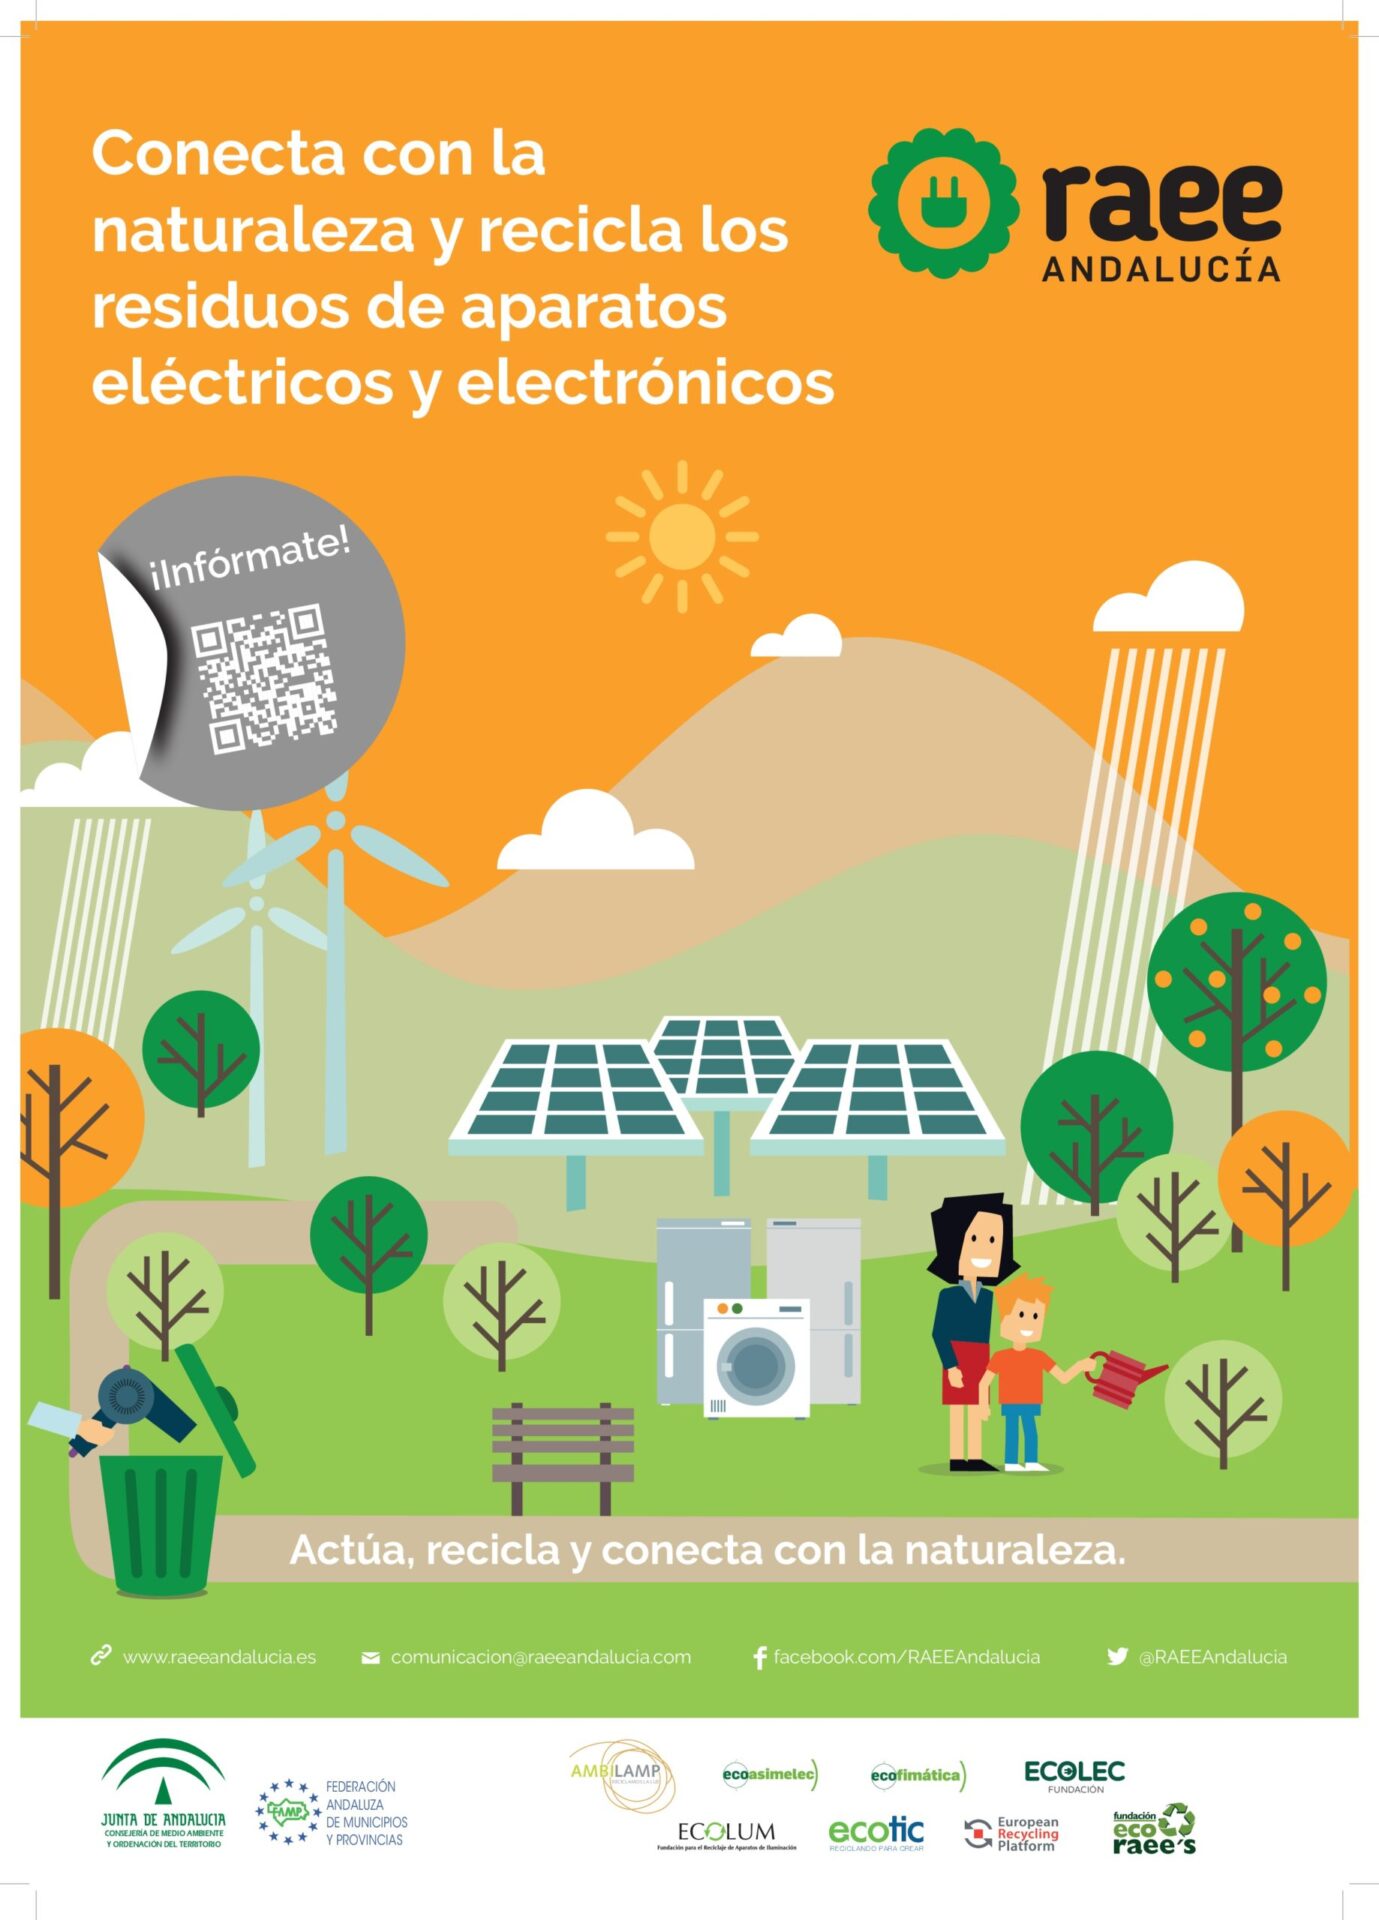 "Conecta con la naturaleza y recicla los residuos de aparatos eléctricos y electrónicos" 1